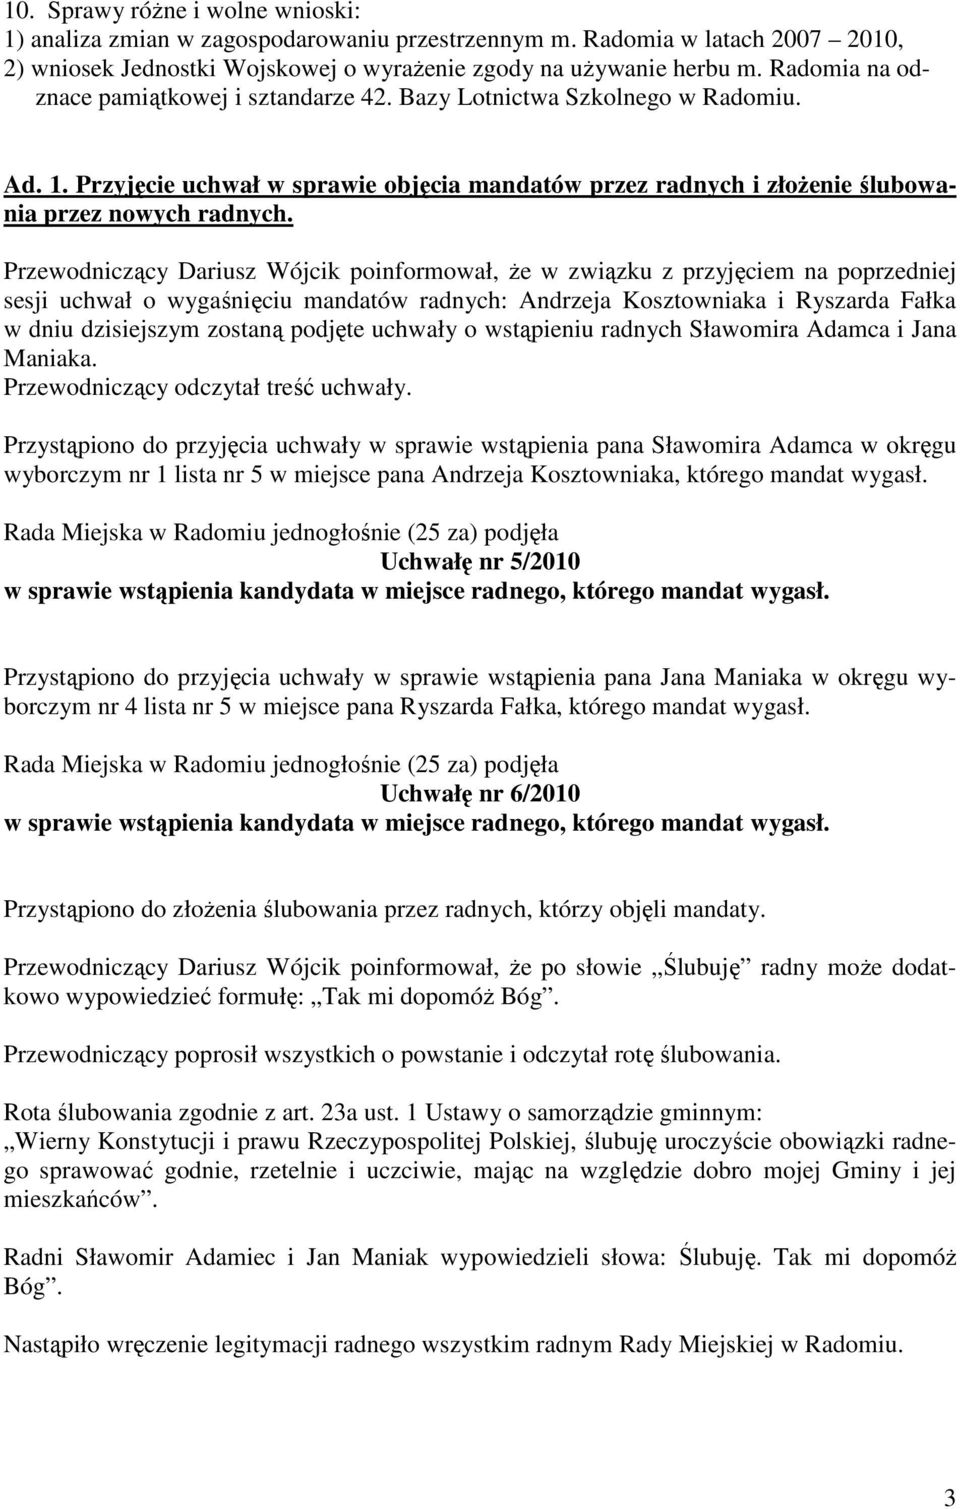 Przewodniczący Dariusz Wójcik poinformował, Ŝe w związku z przyjęciem na poprzedniej sesji uchwał o wygaśnięciu mandatów radnych: Andrzeja Kosztowniaka i Ryszarda Fałka w dniu dzisiejszym zostaną